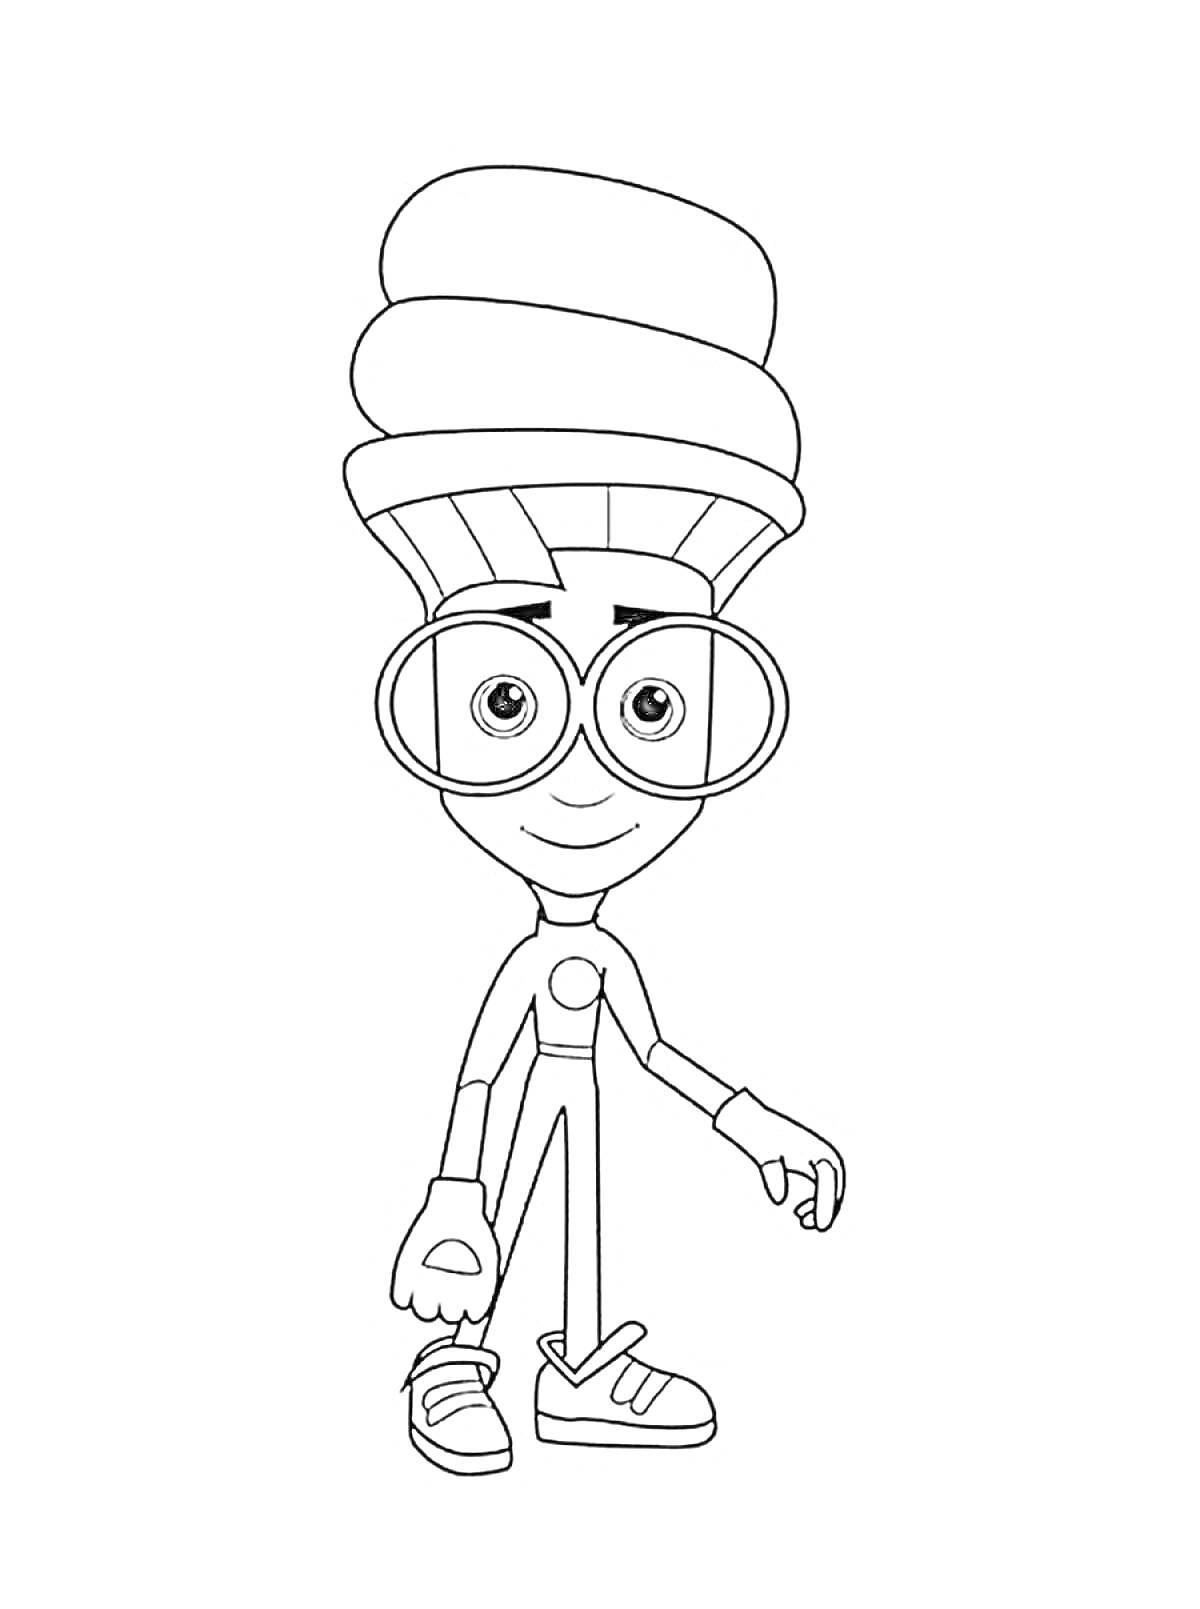 Раскраска Фиксики персонаж с очками и крупной причёской